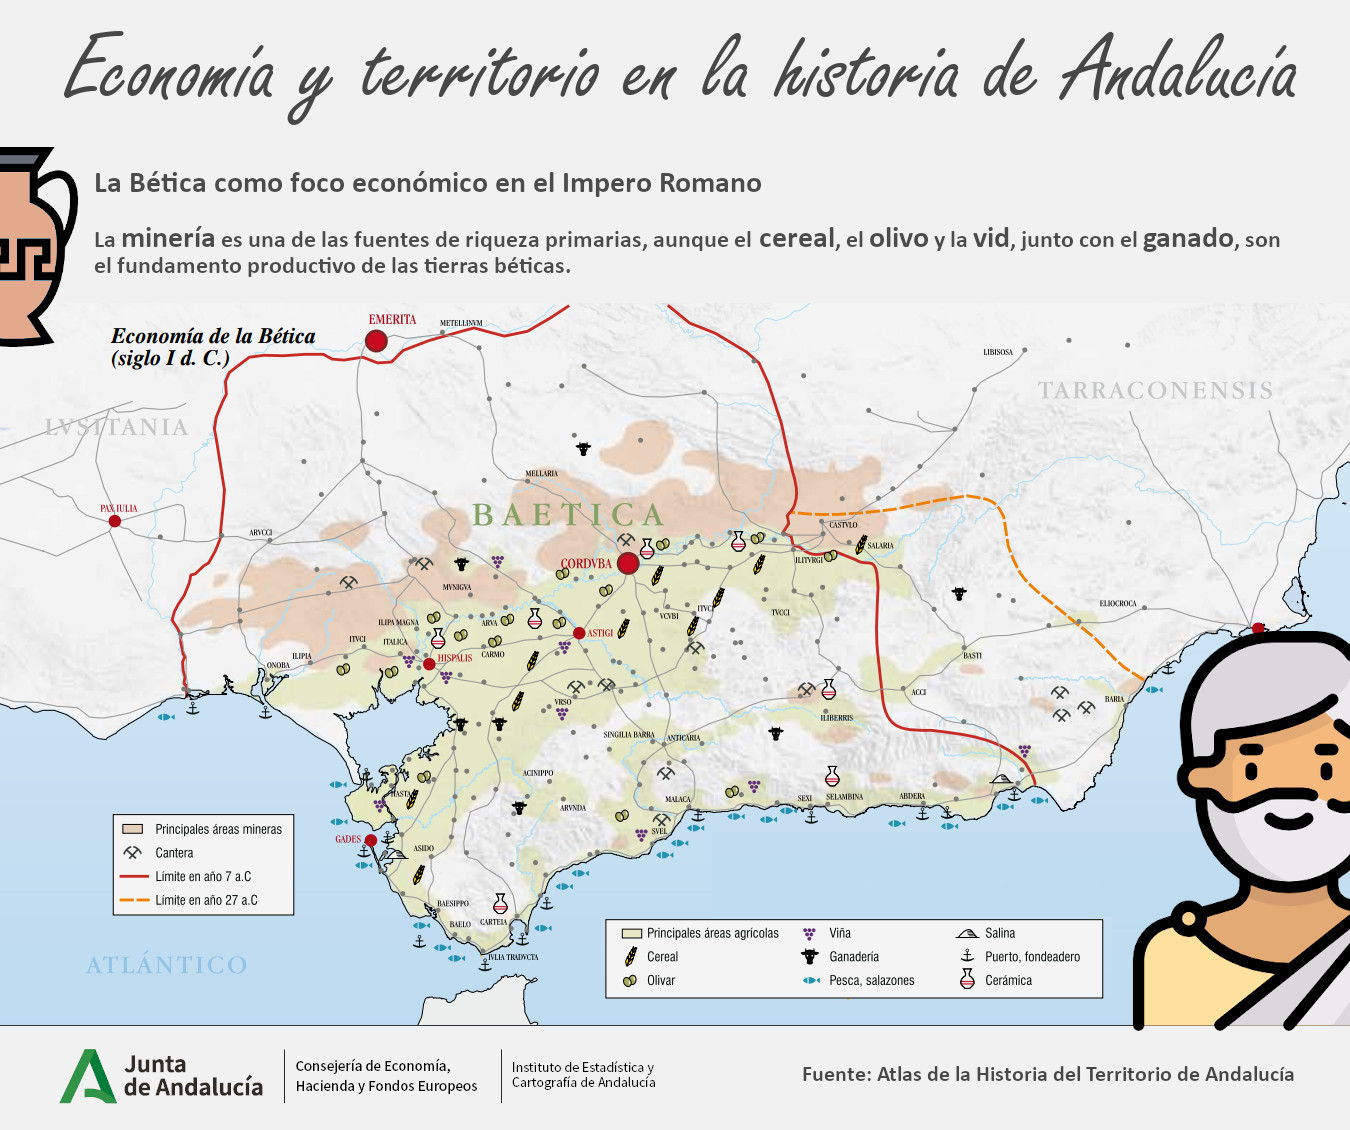 Economía y territorio en la historia de Andalucía. La Bética romana. Dibujo creado por Freepik